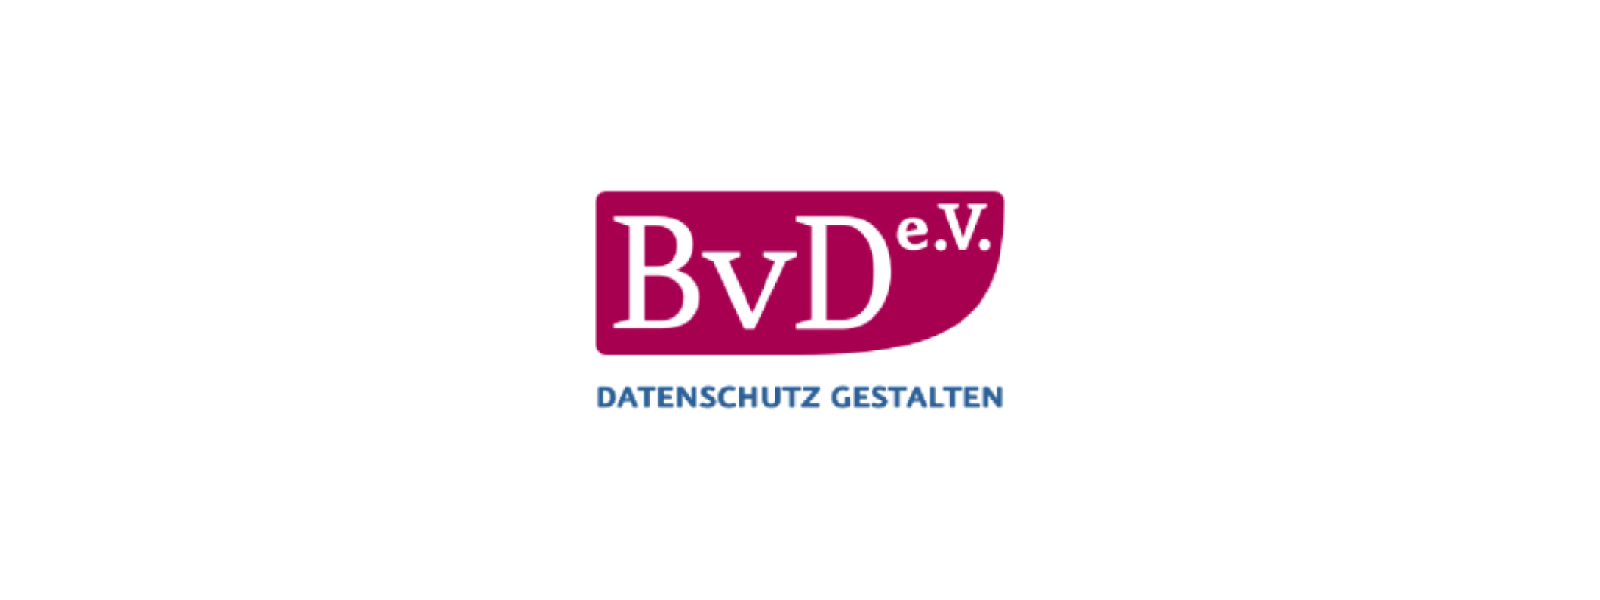 Wir stellen vor: BvD unser Partnerverein in Deutschland